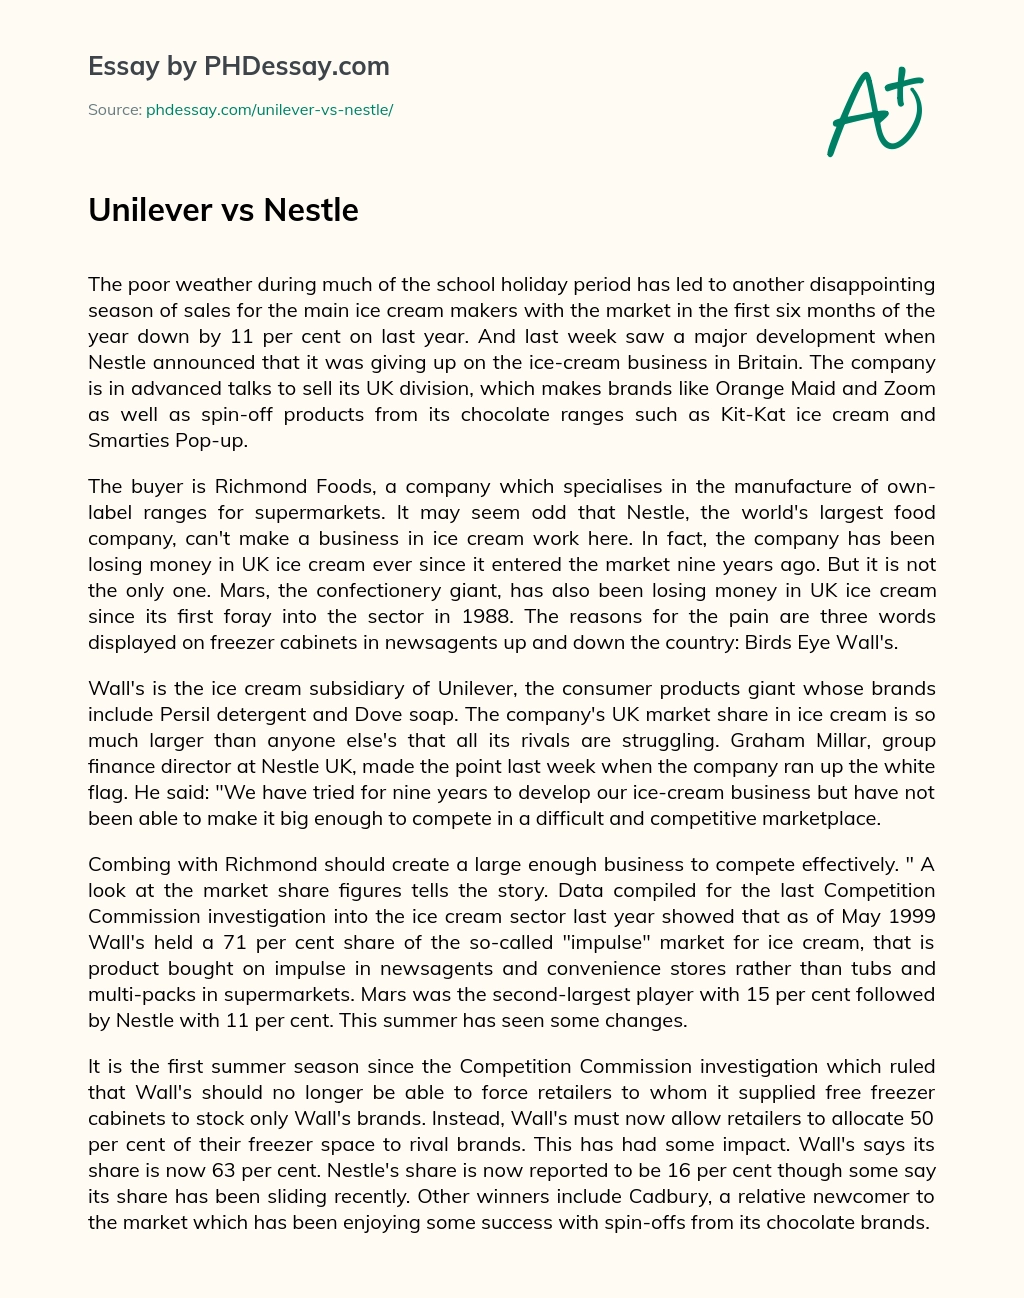 Unilever vs Nestle essay